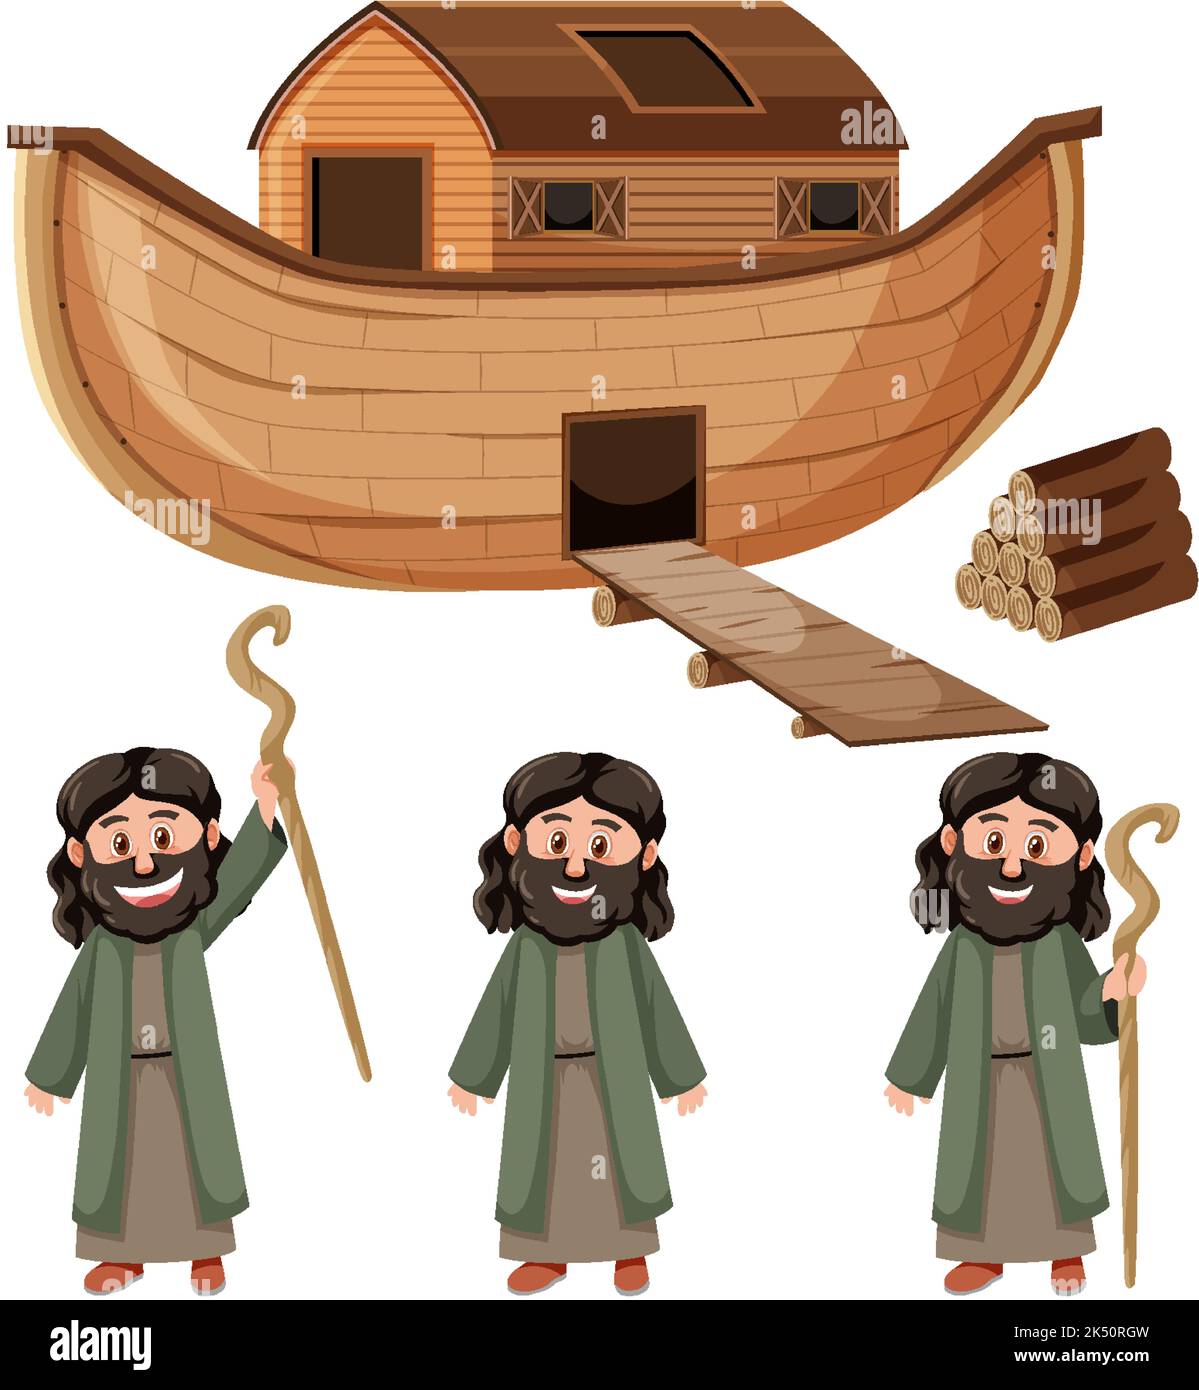 Noah's Ark - online puzzle